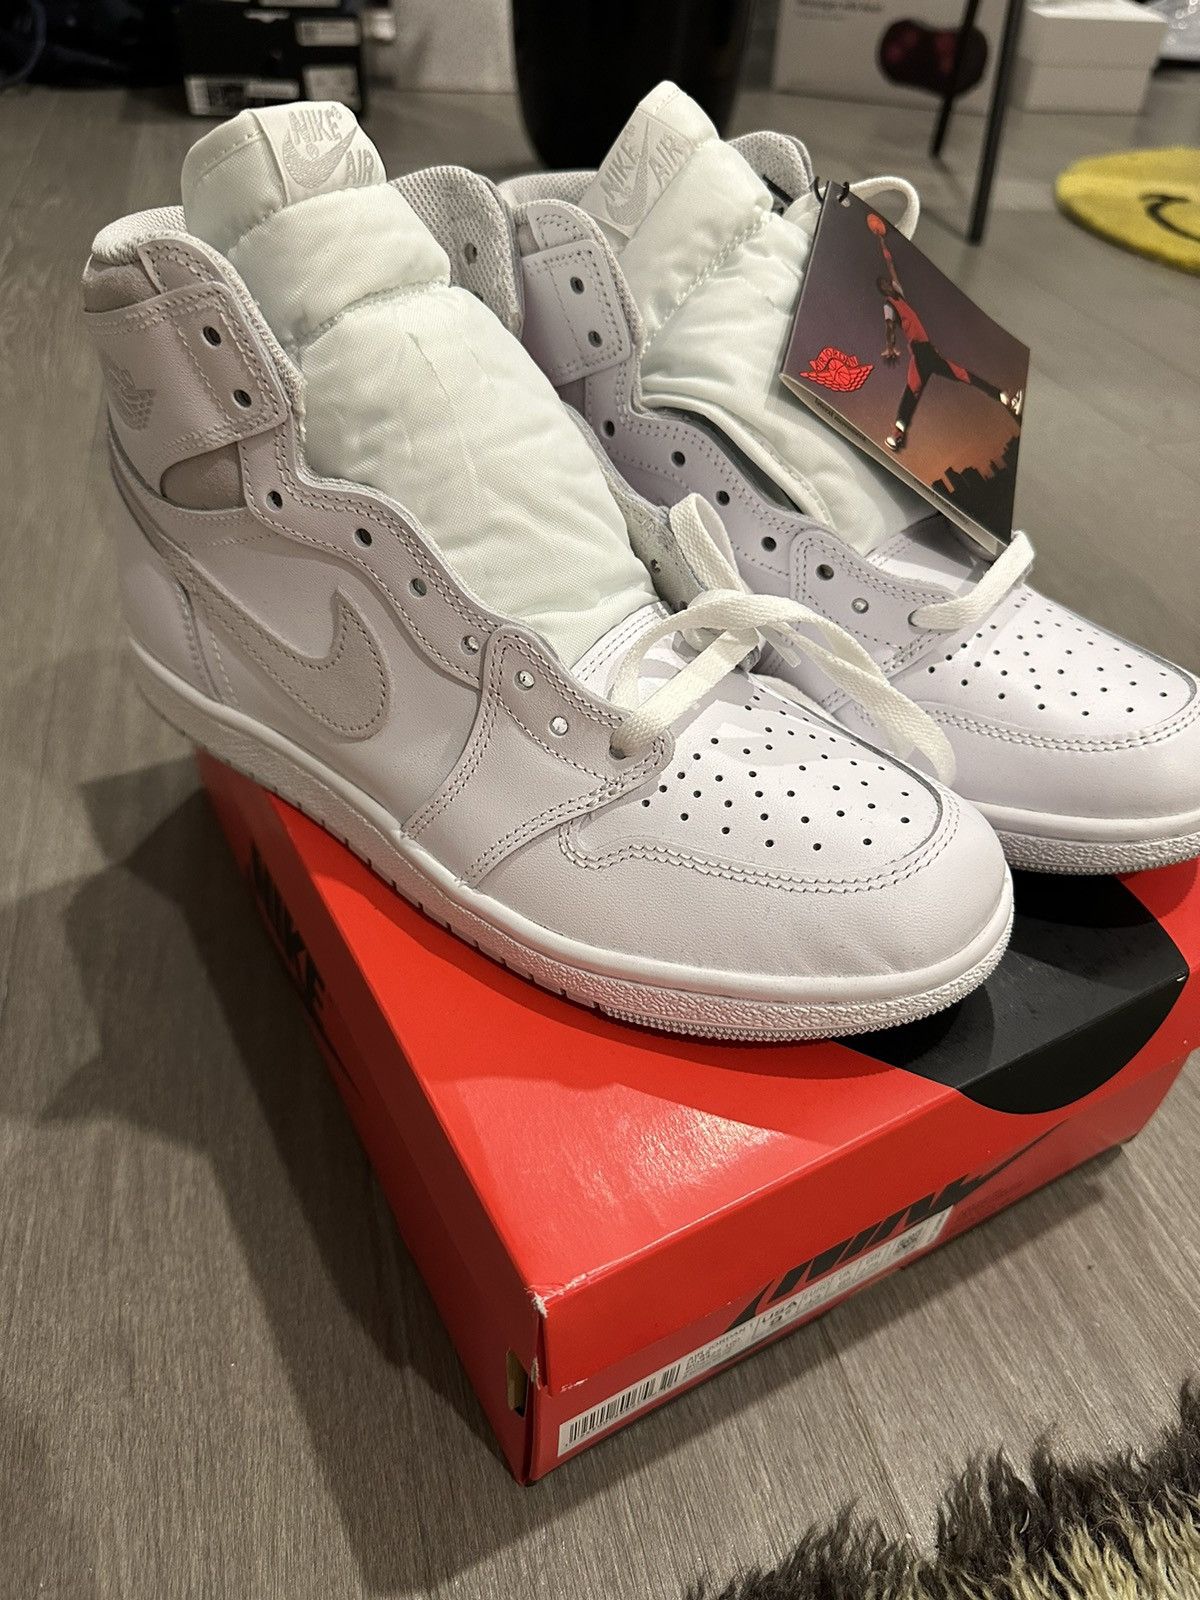 Nike Air Jordan 1 High 85 Neutral Gray | Grailed